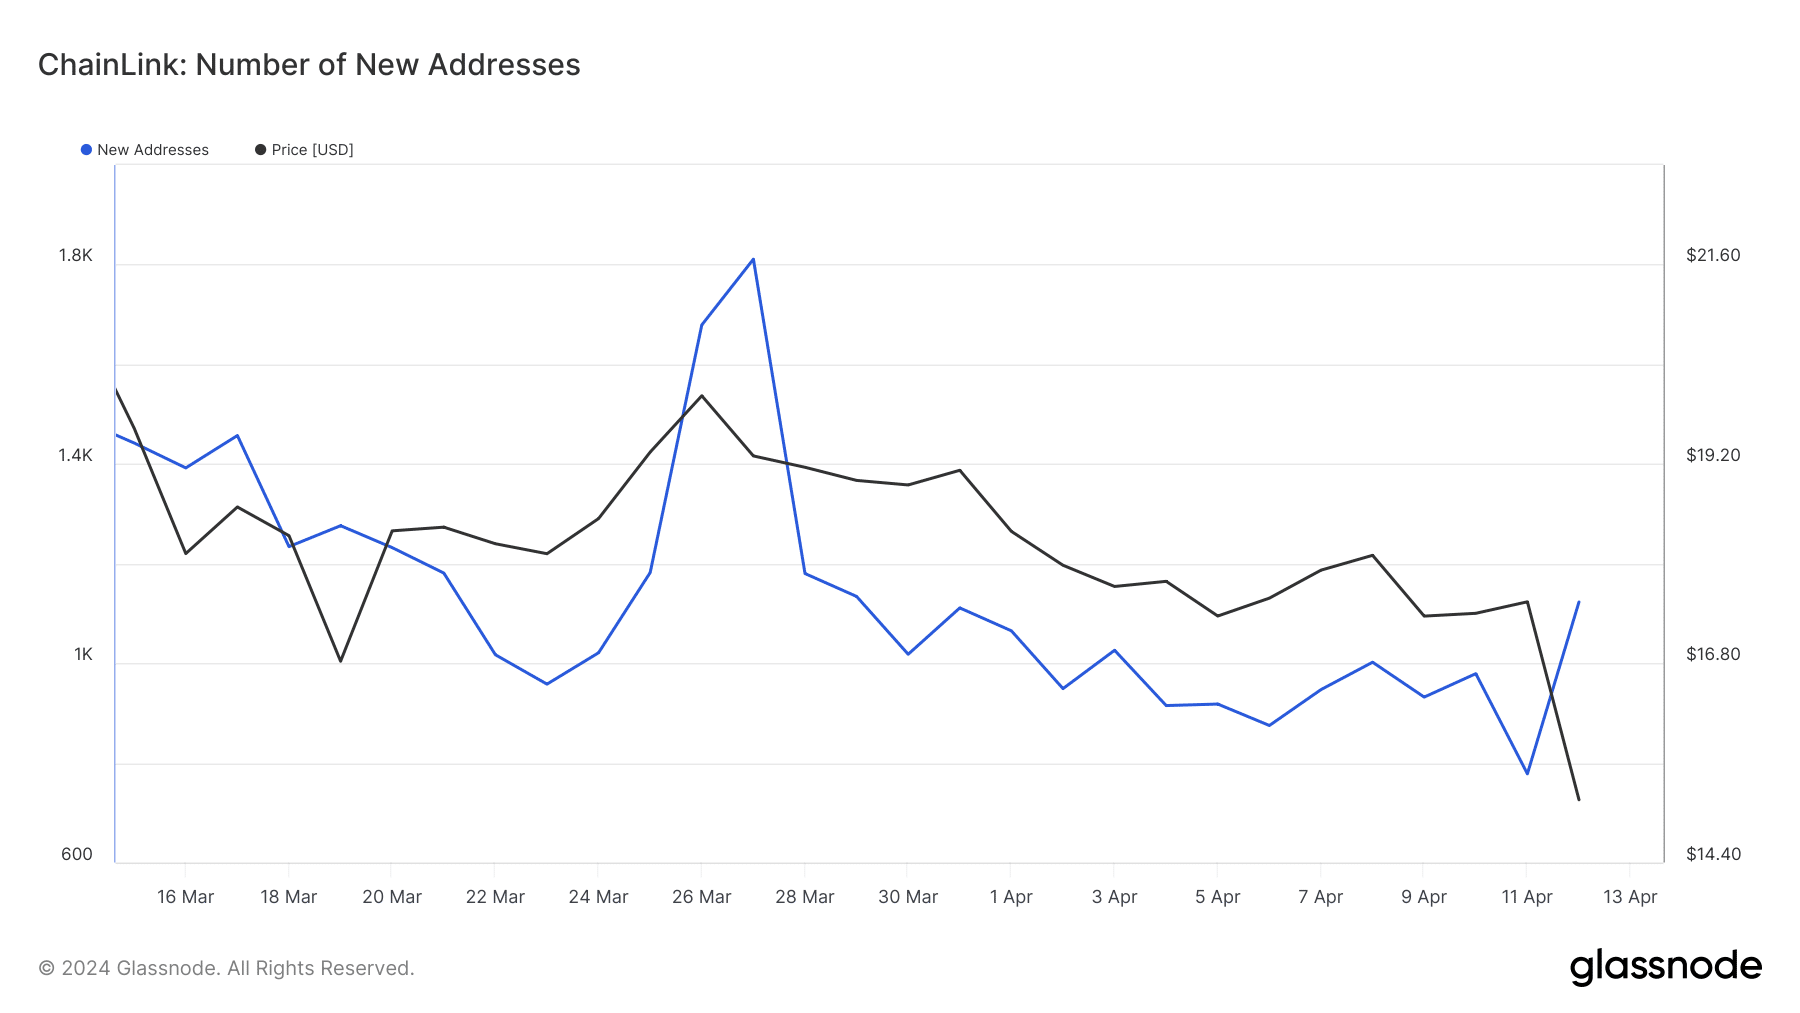 Podatki kažejo porast naslovov LINK